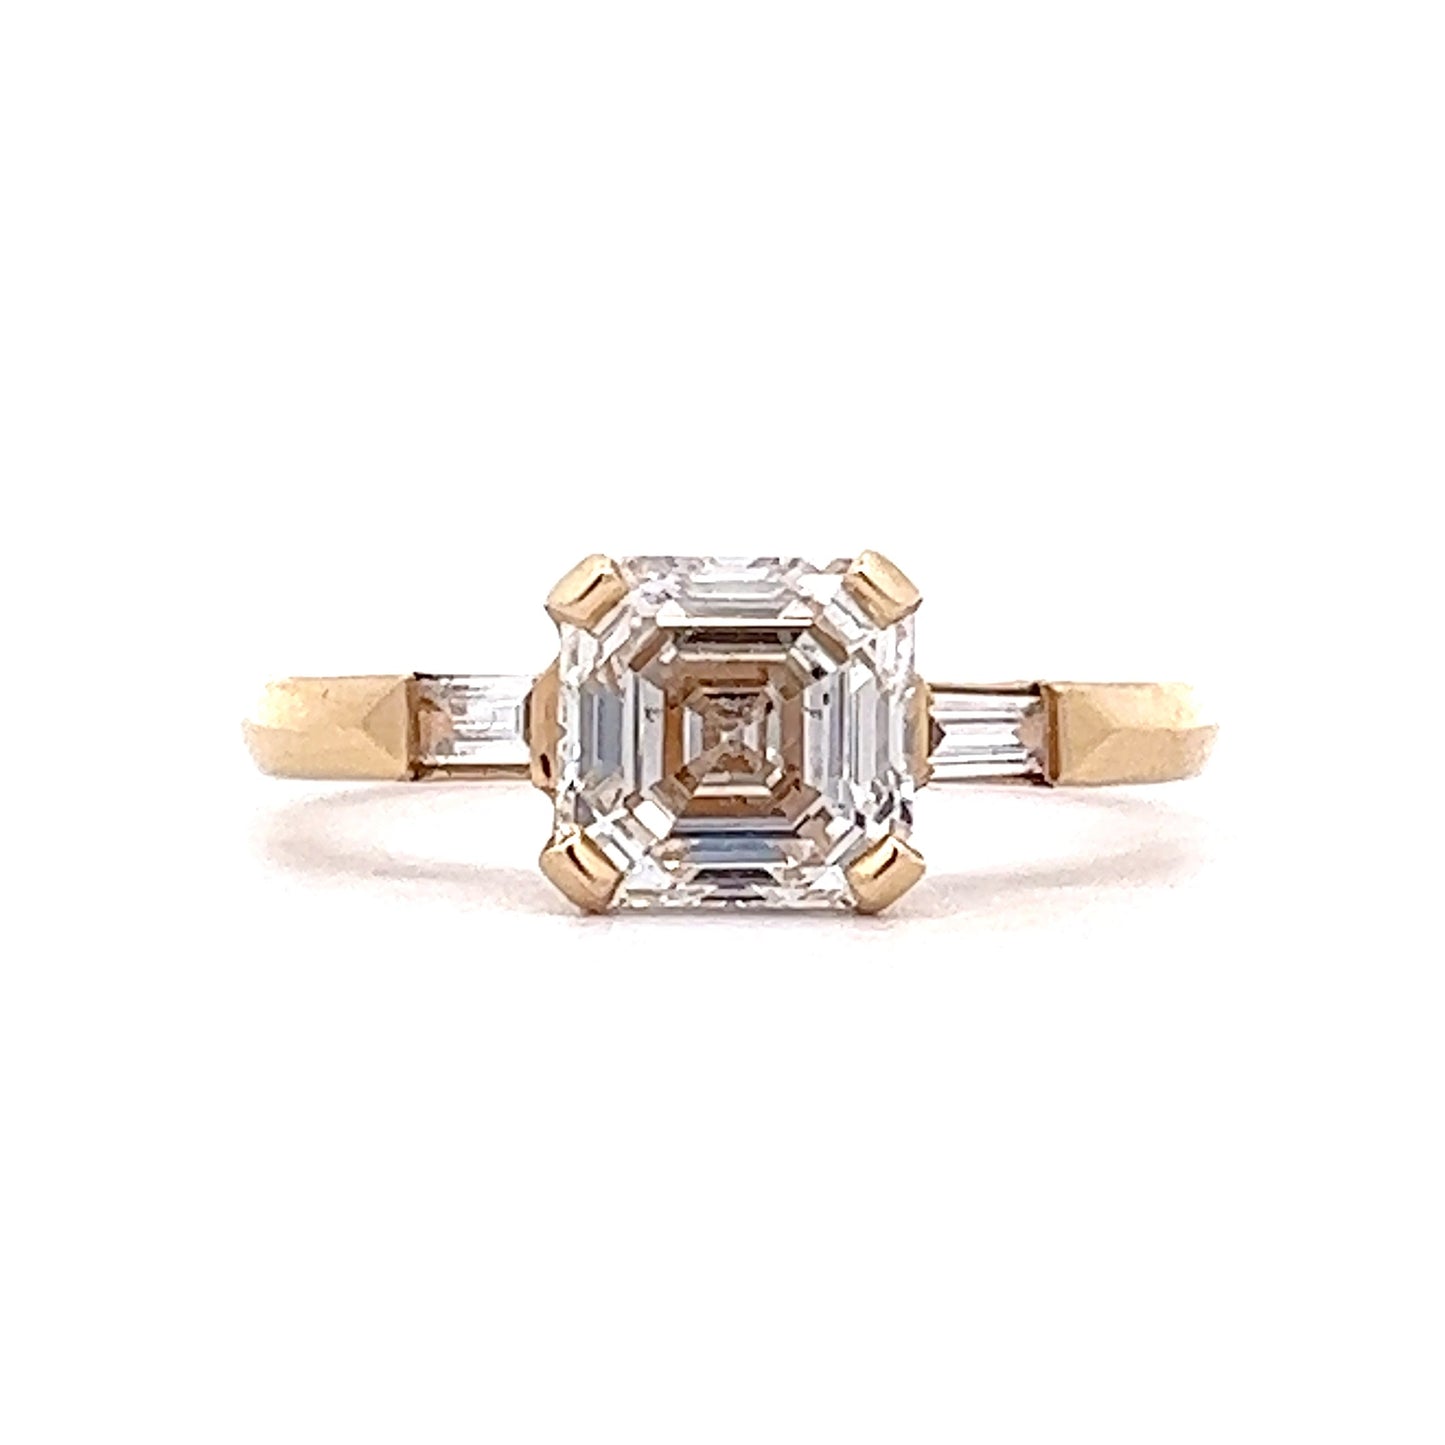 1.50 Asscher Cut Diamond Engagement Ring in 14k Yellow Gold